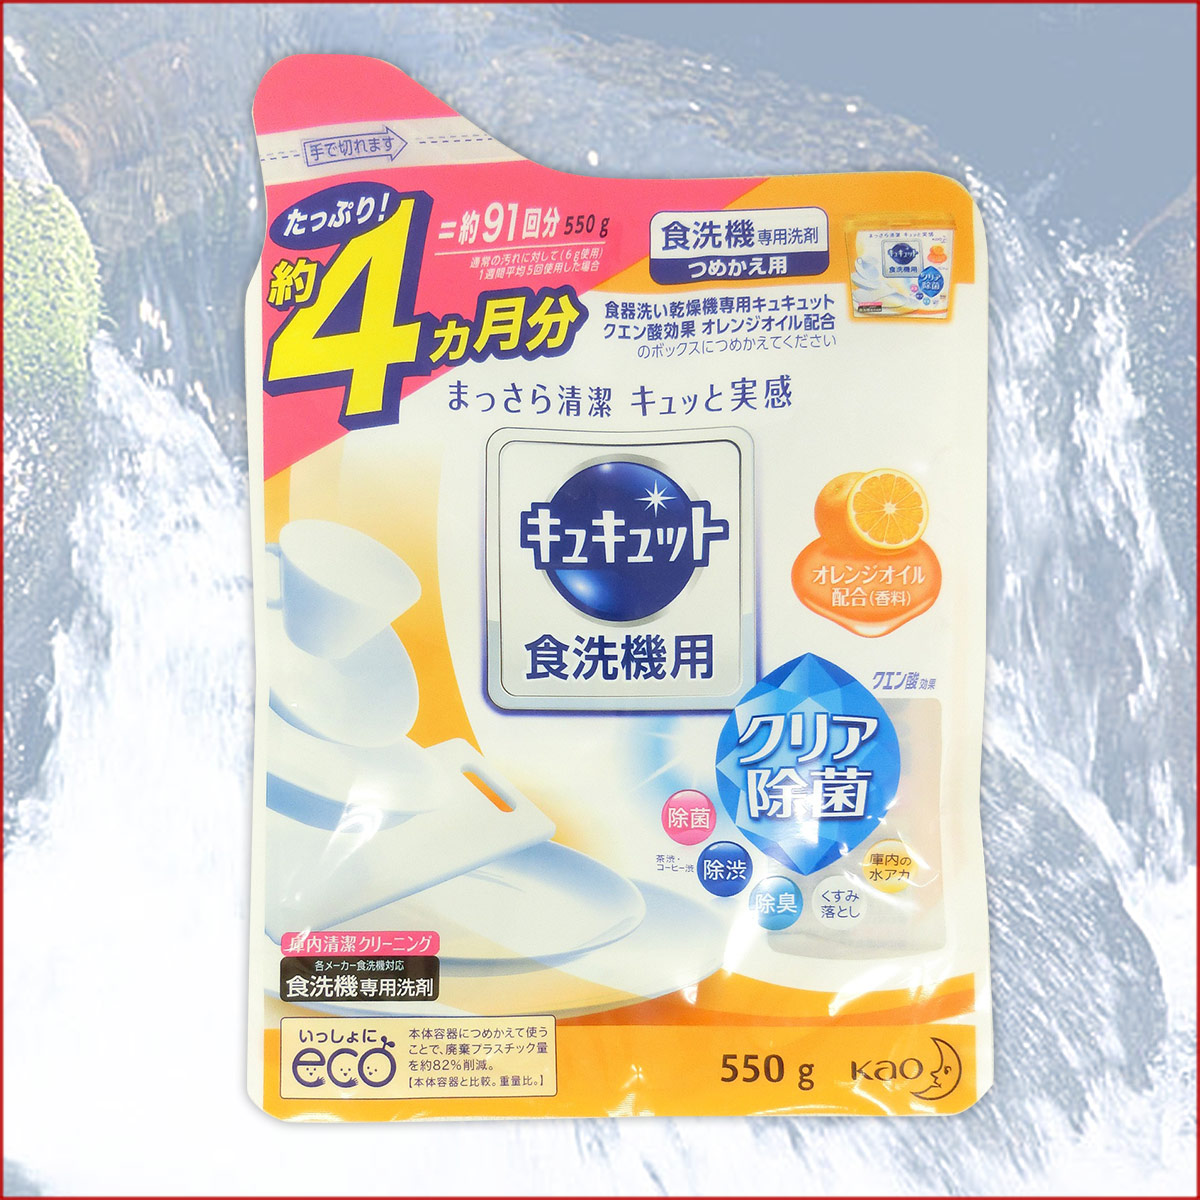 Bột rửa bát Kyukyuto chuyên dụng cho máy rửa chén bát 550g hương cam - made in Japan